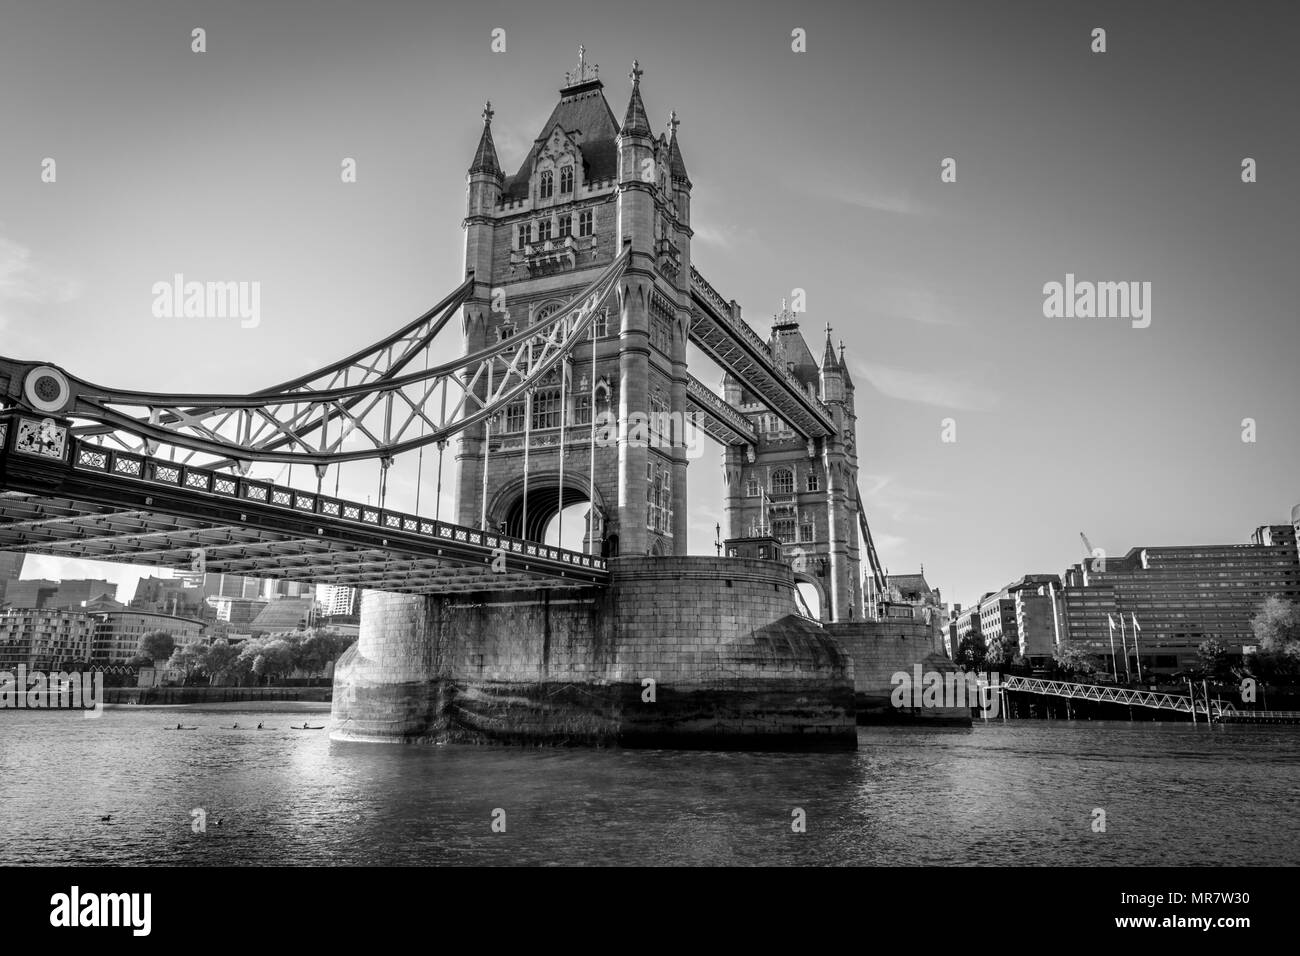 C'est une photo en noir et blanc de Tower Bridge l'un des points de repère emblématiques de Londres Banque D'Images